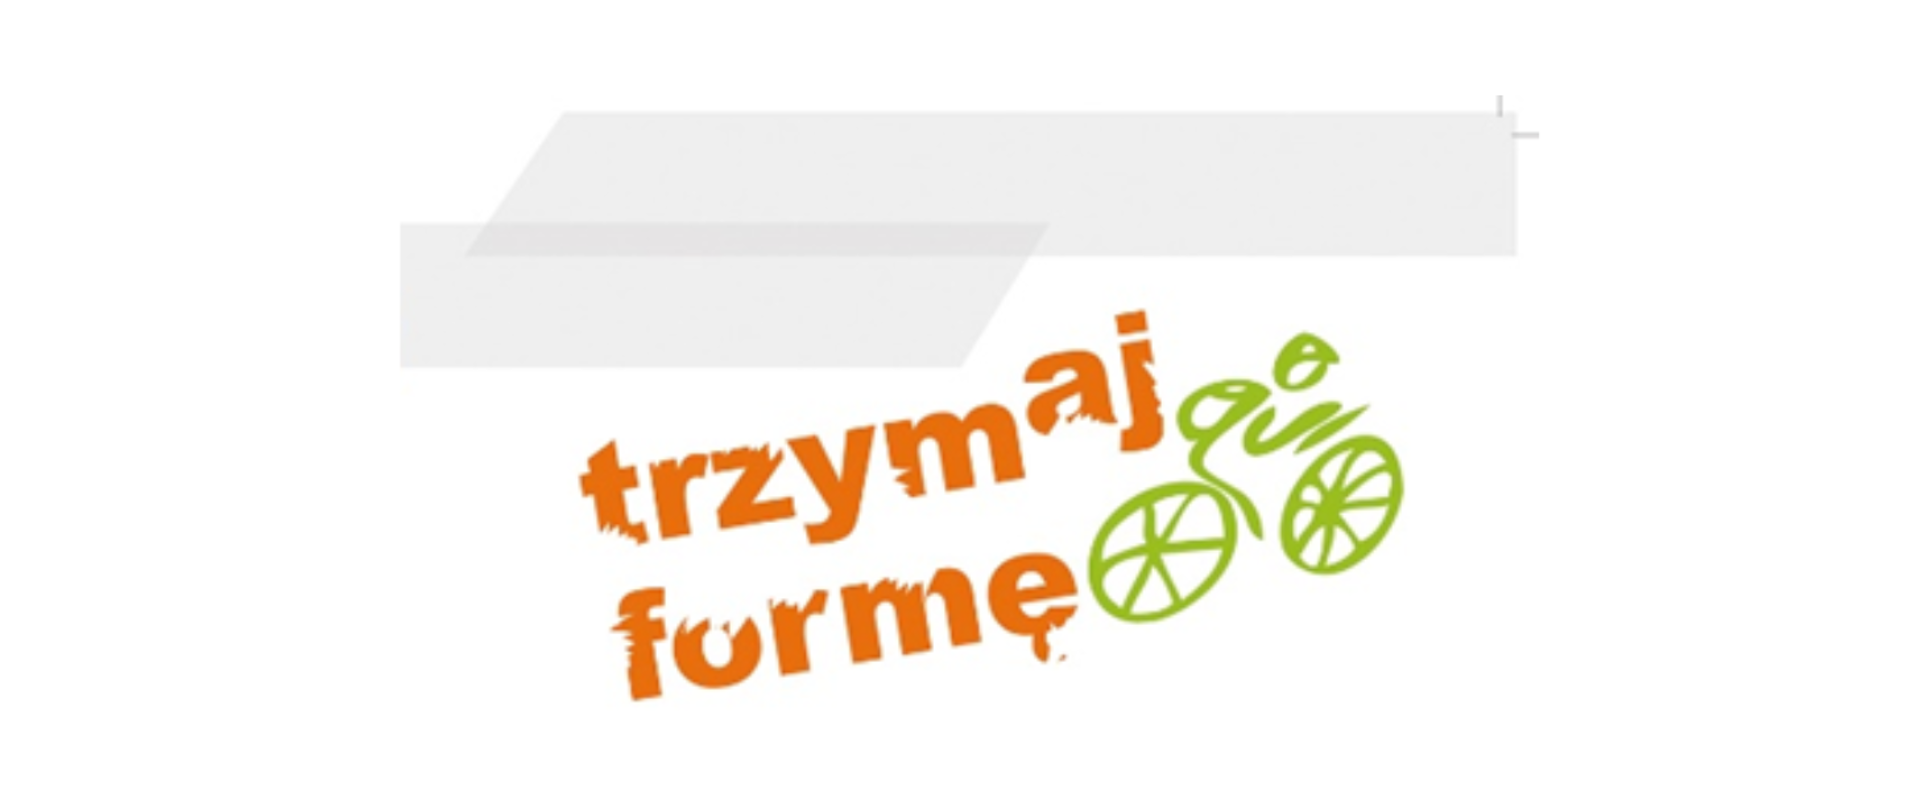 Pomarańczowy napis "Trzymaj Formę" z zielonym rowerem